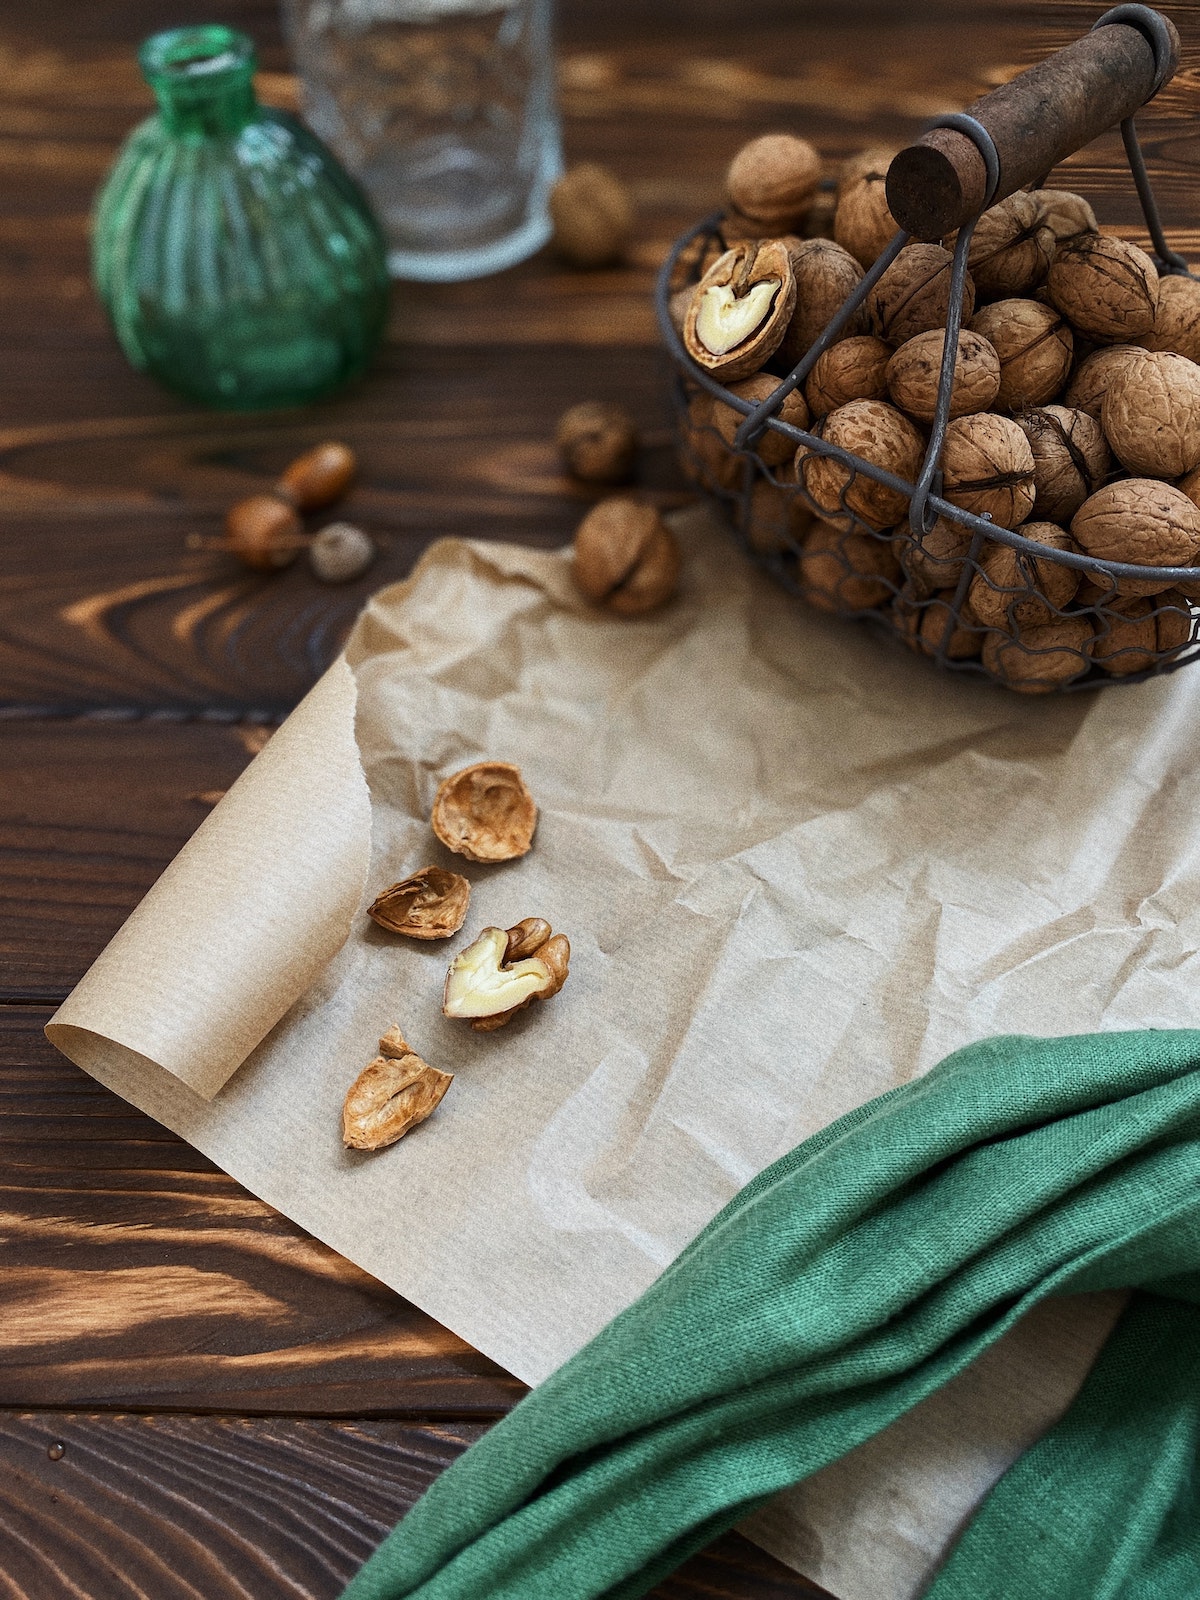 Caramelized walnuts - Caramelized walnuts